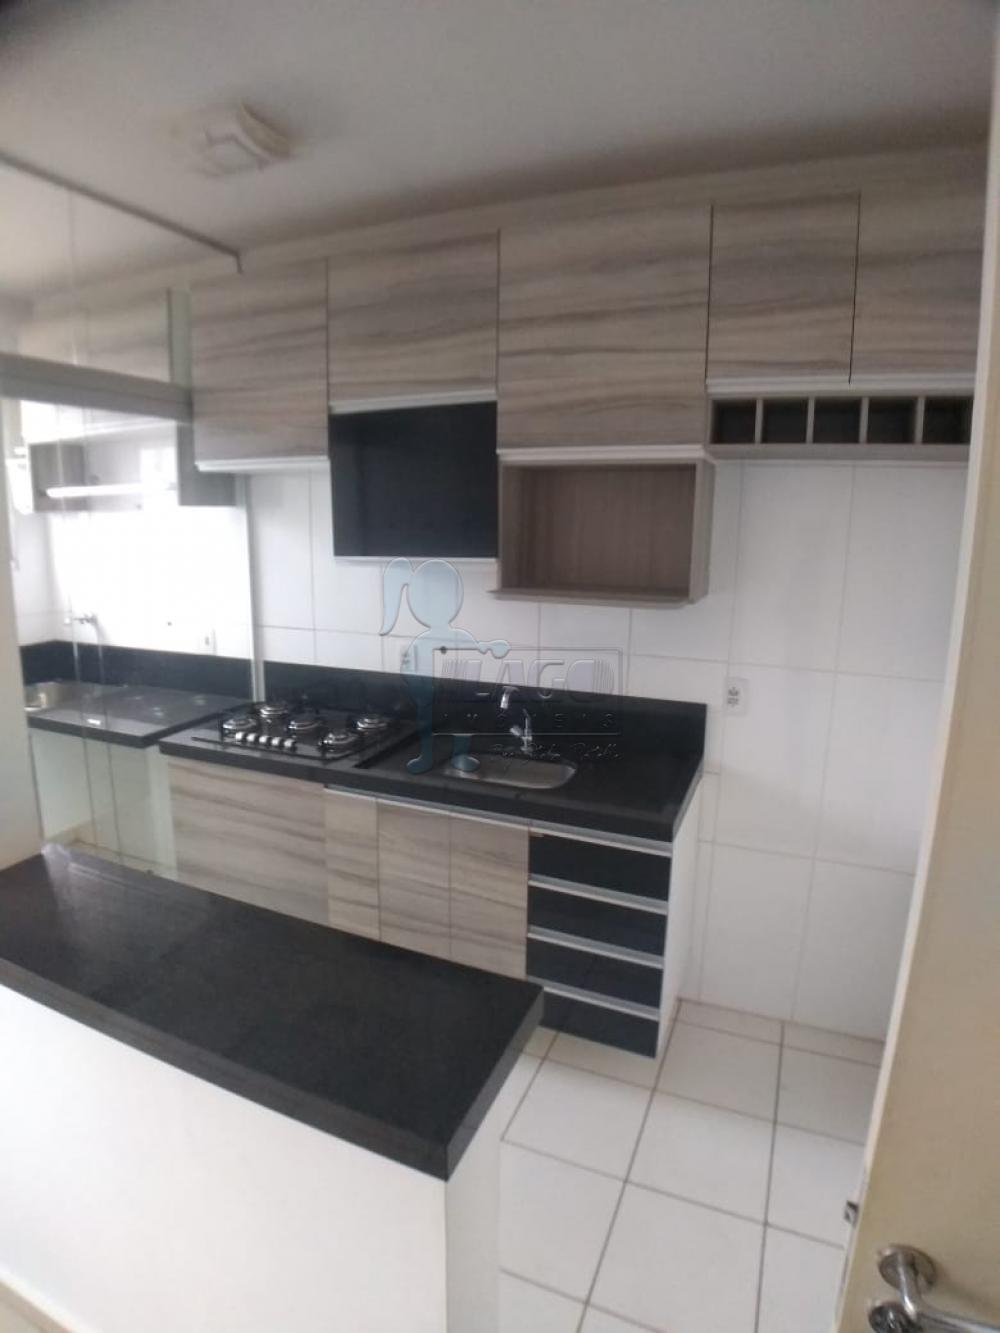 Alugar Apartamento / Padrão em Ribeirão Preto R$ 1.050,00 - Foto 3